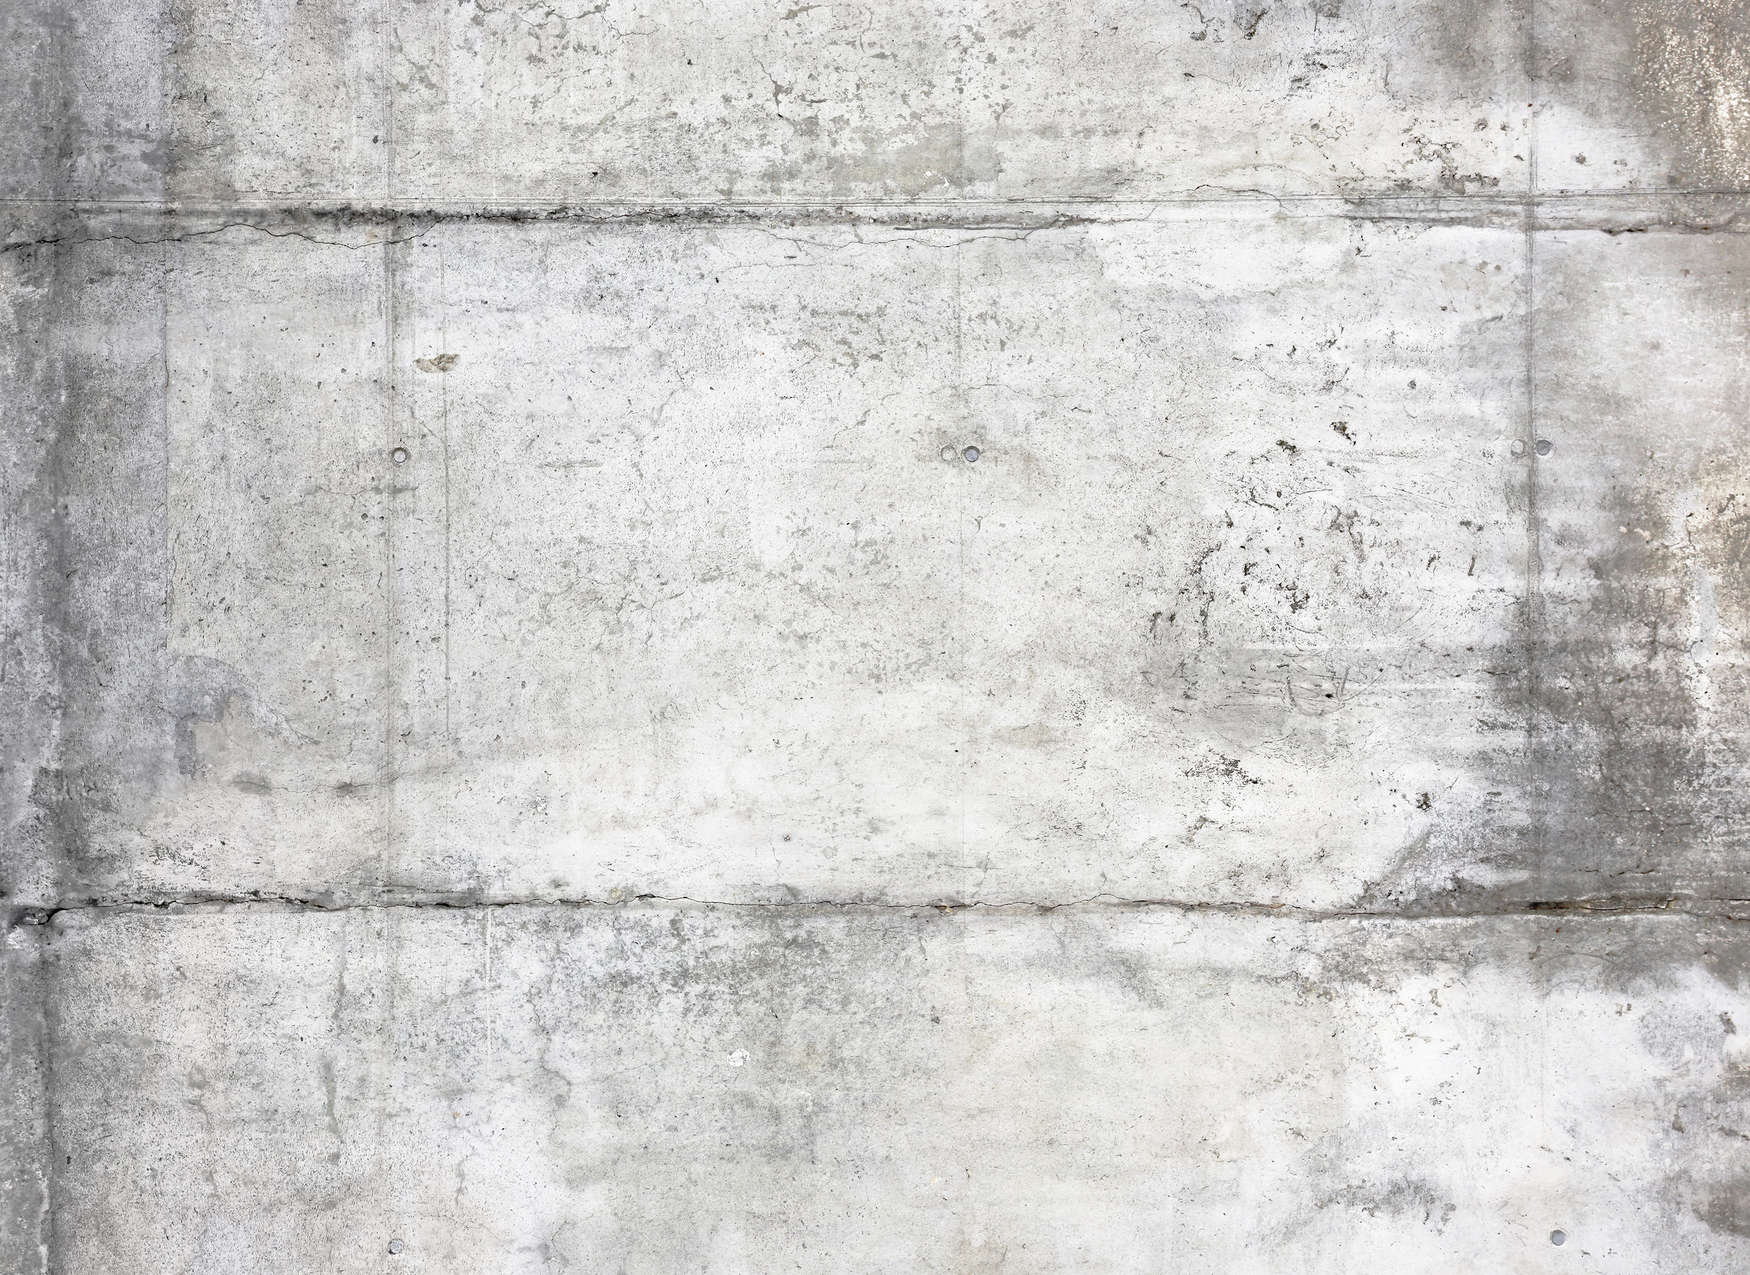             Fotomurali in cemento vintage dall'aspetto usato - grigio, bianco
        